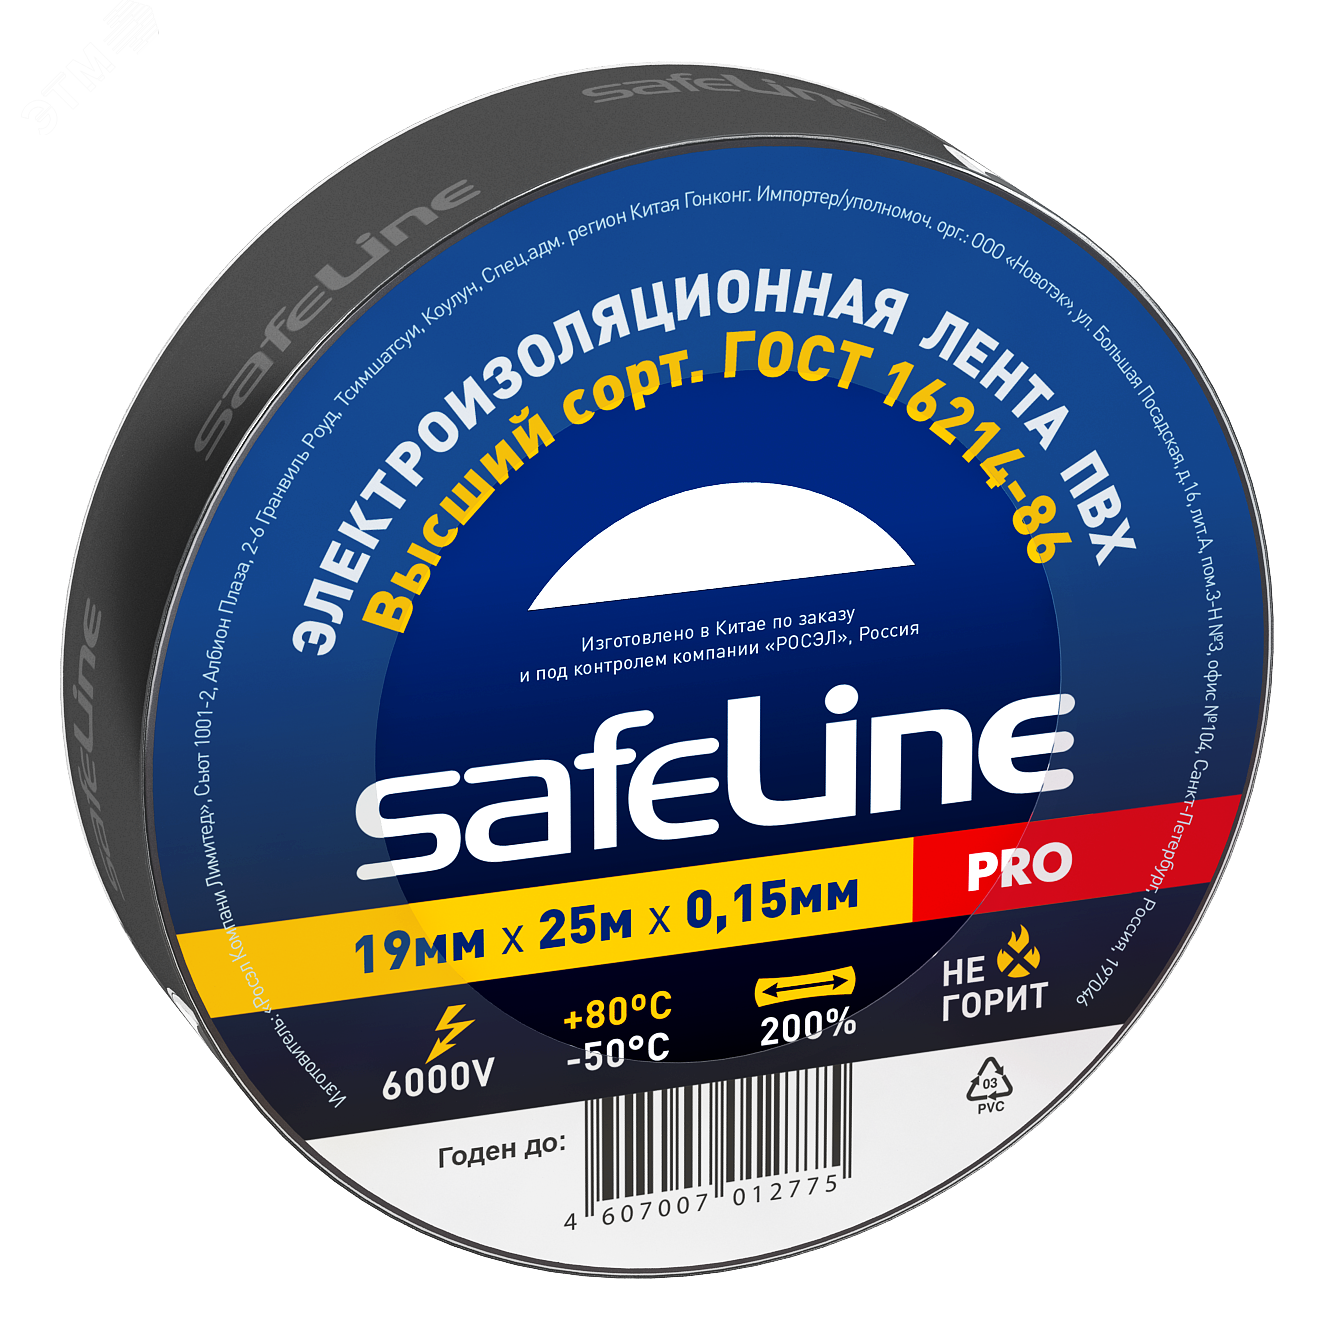 Изолента Safeline 19/25 черный 9372 SafeLine - превью 2